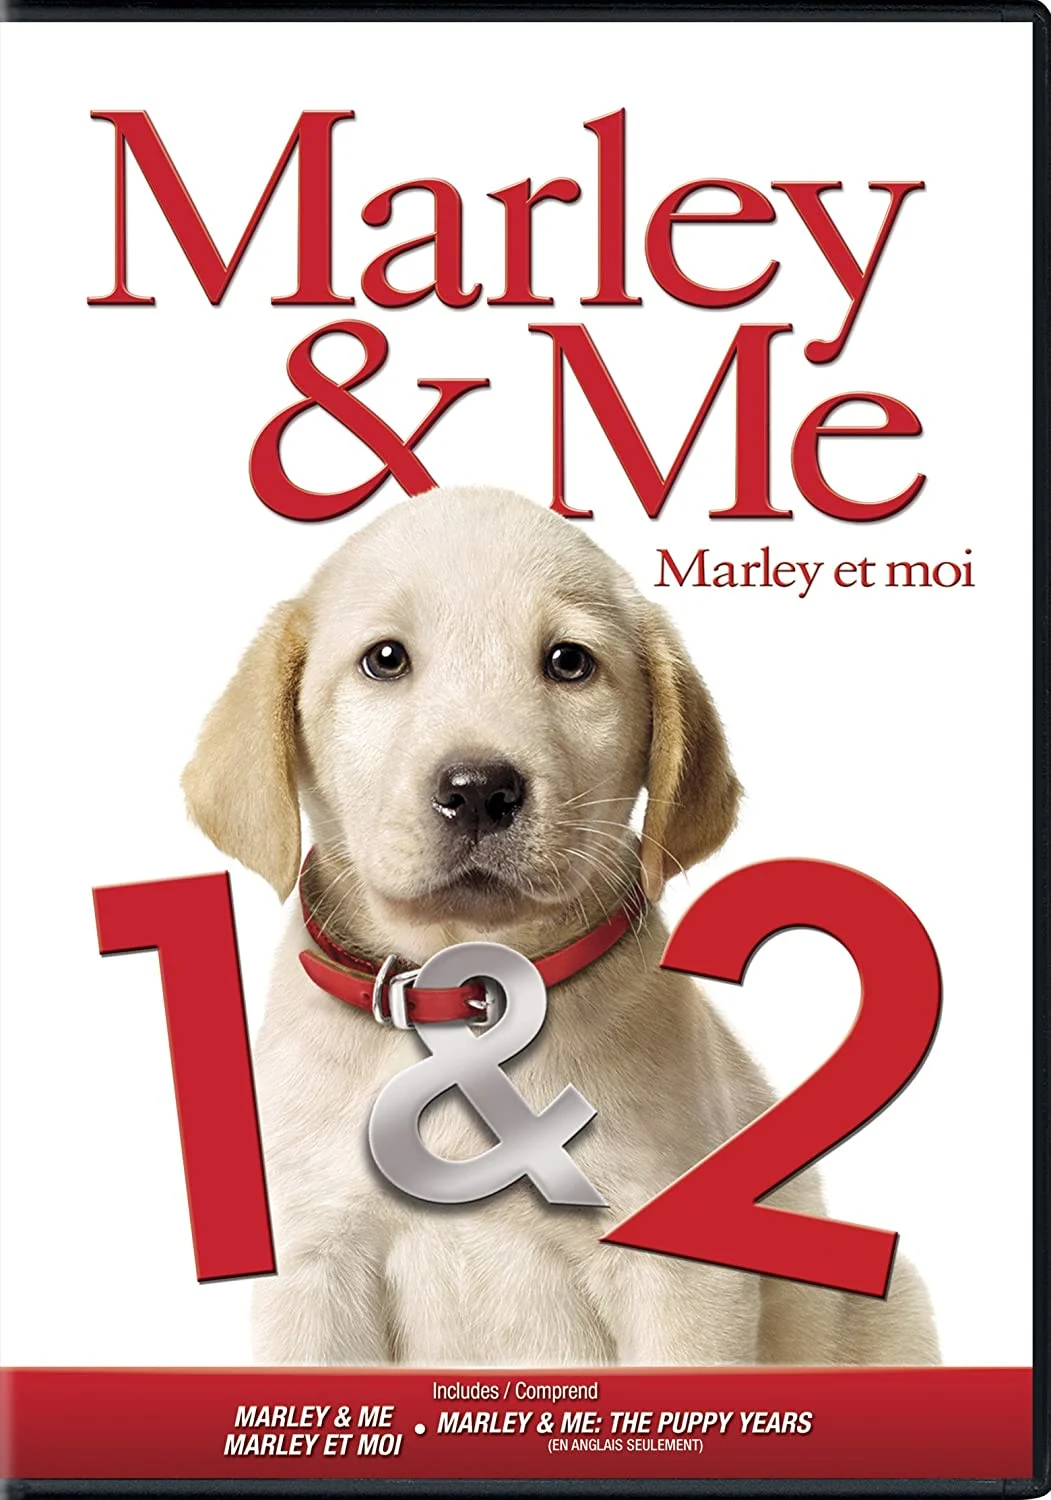 Marley & Me: 1 & 2 (DVD) on MovieShack